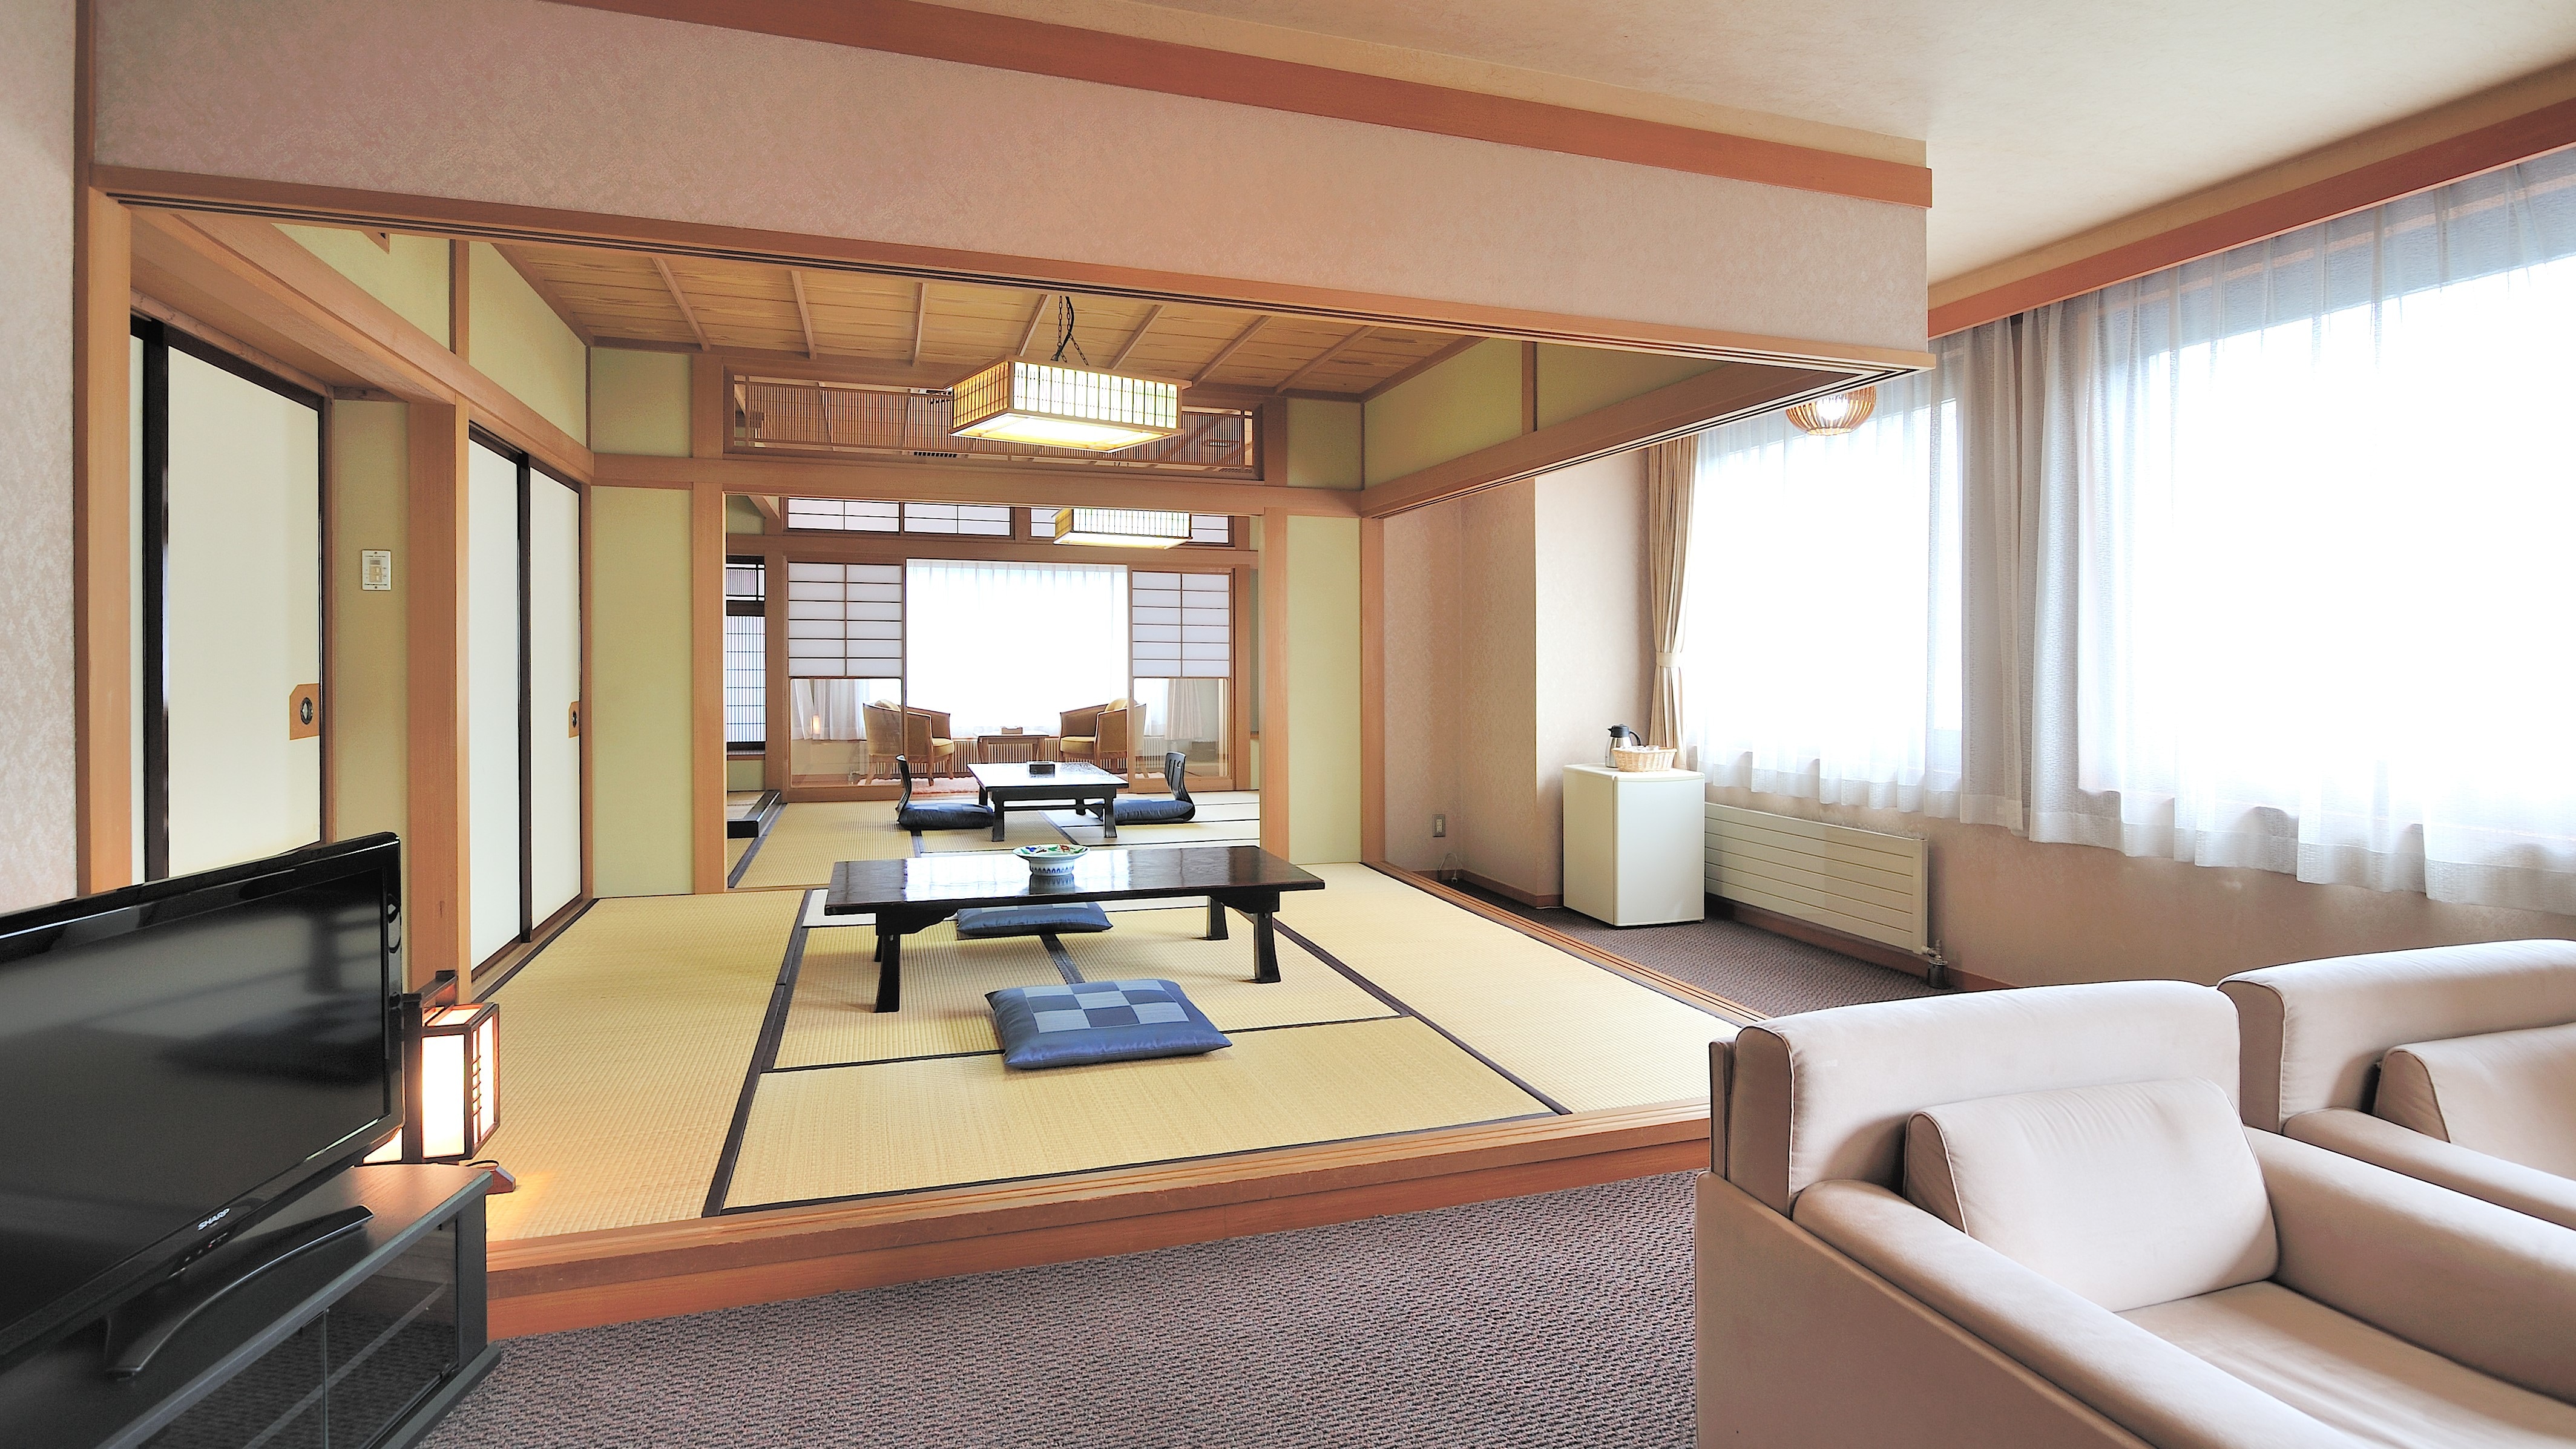 日式房間10張榻榻米+6張榻榻米+帶浴室和衛生間的客廳